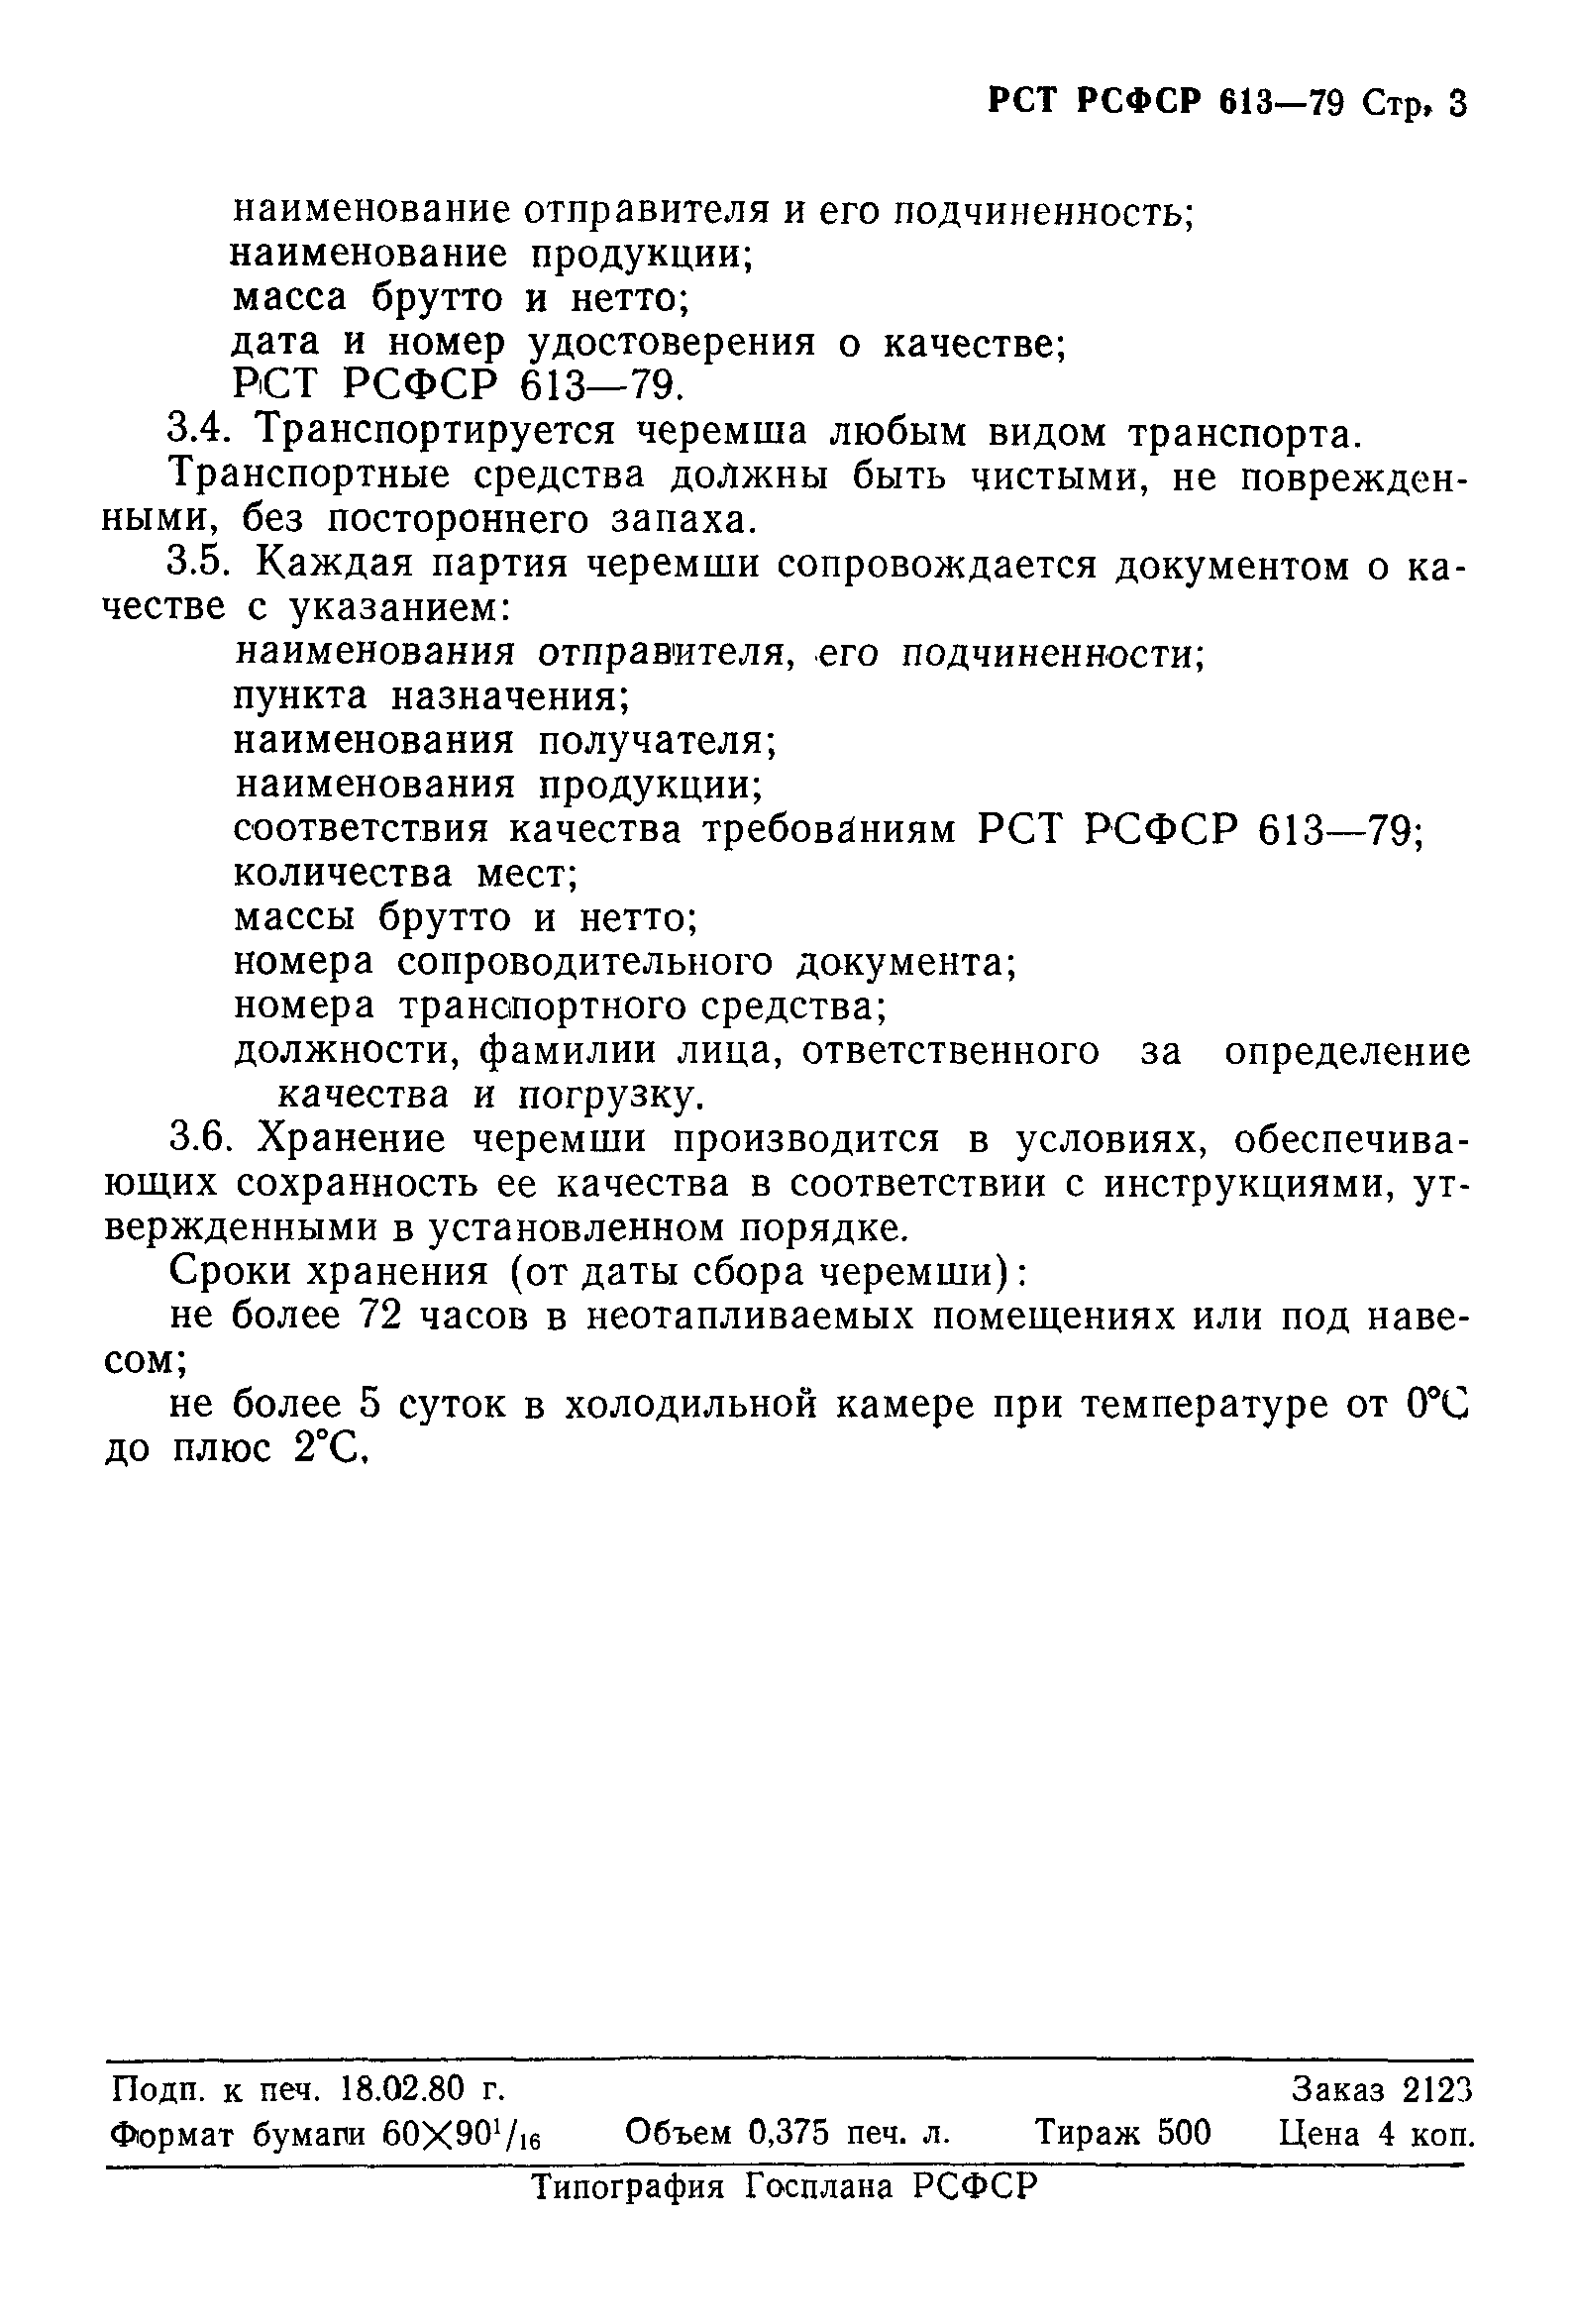 РСТ РСФСР 613-79